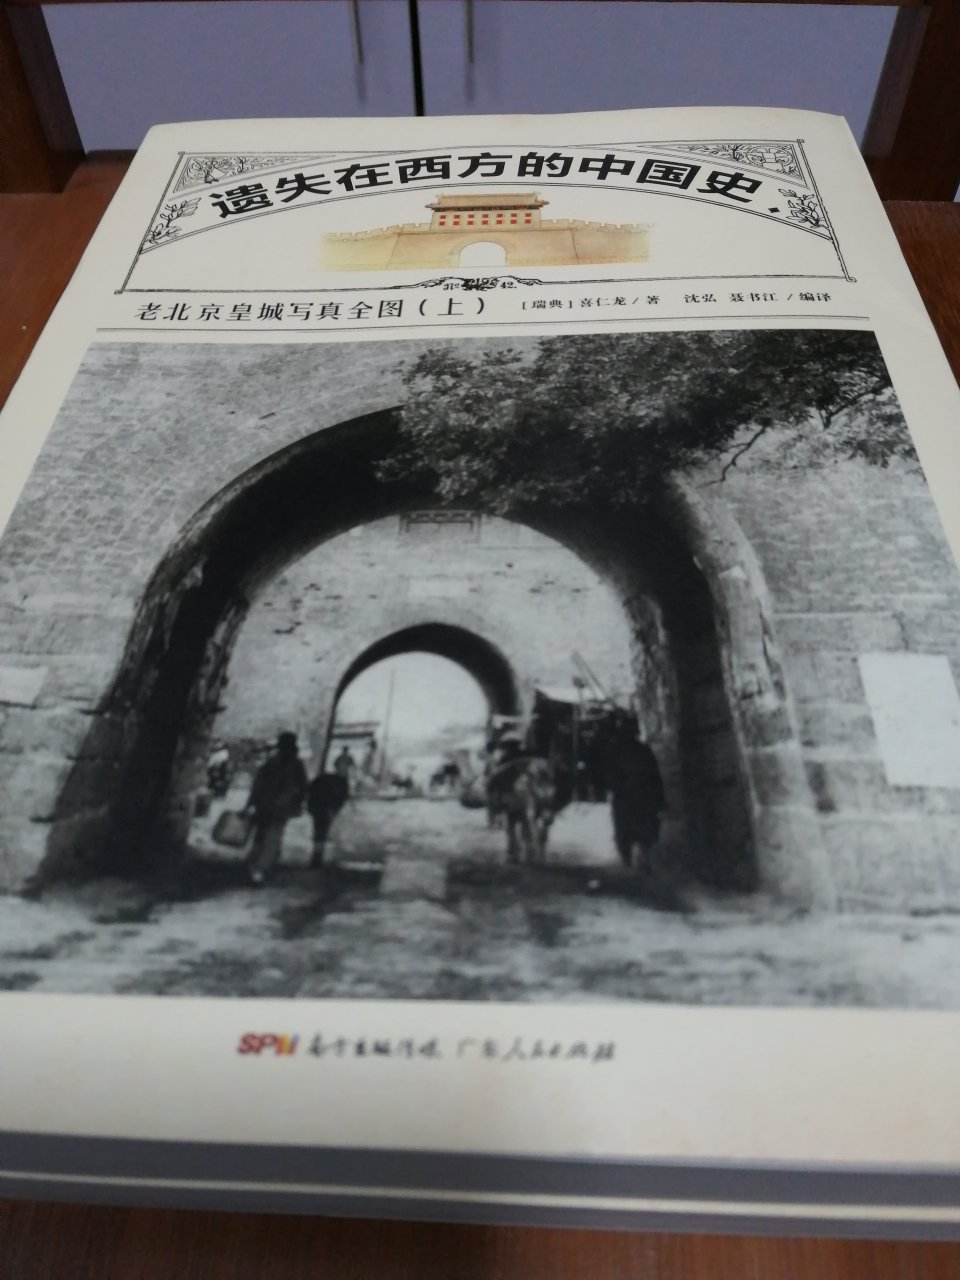 很不错的一本书，看看老北京的样子，古色古香古韵。